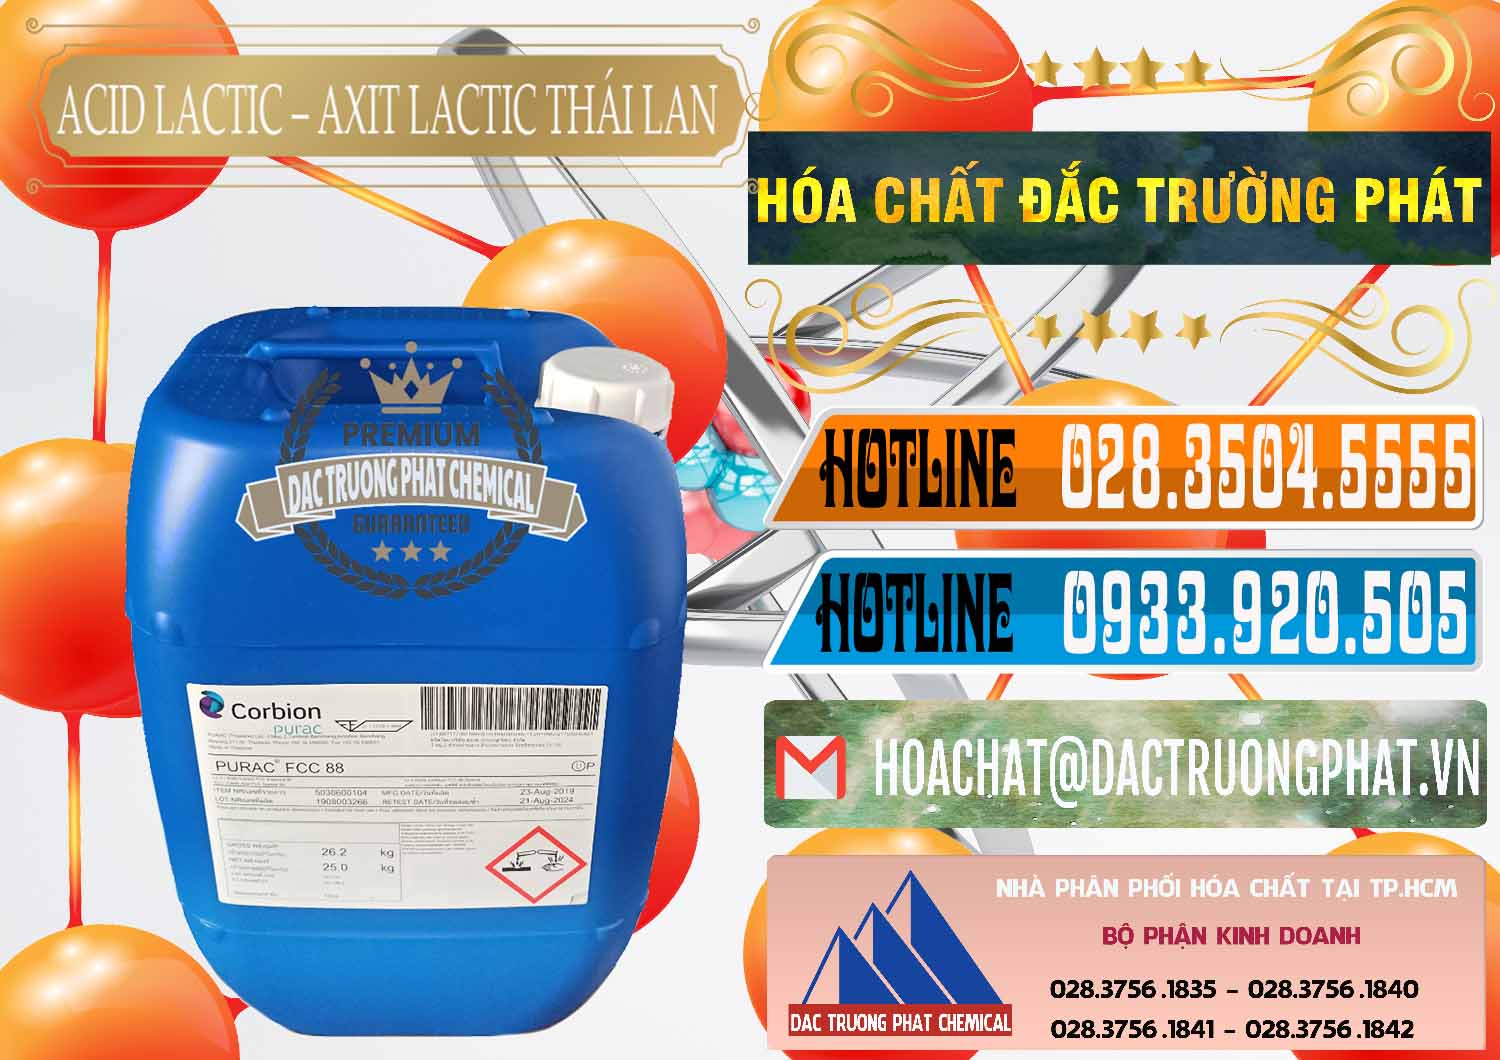 Đơn vị chuyên nhập khẩu và bán Acid Lactic – Axit Lactic Thái Lan Purac FCC 88 - 0012 - Cty chuyên nhập khẩu & phân phối hóa chất tại TP.HCM - stmp.net